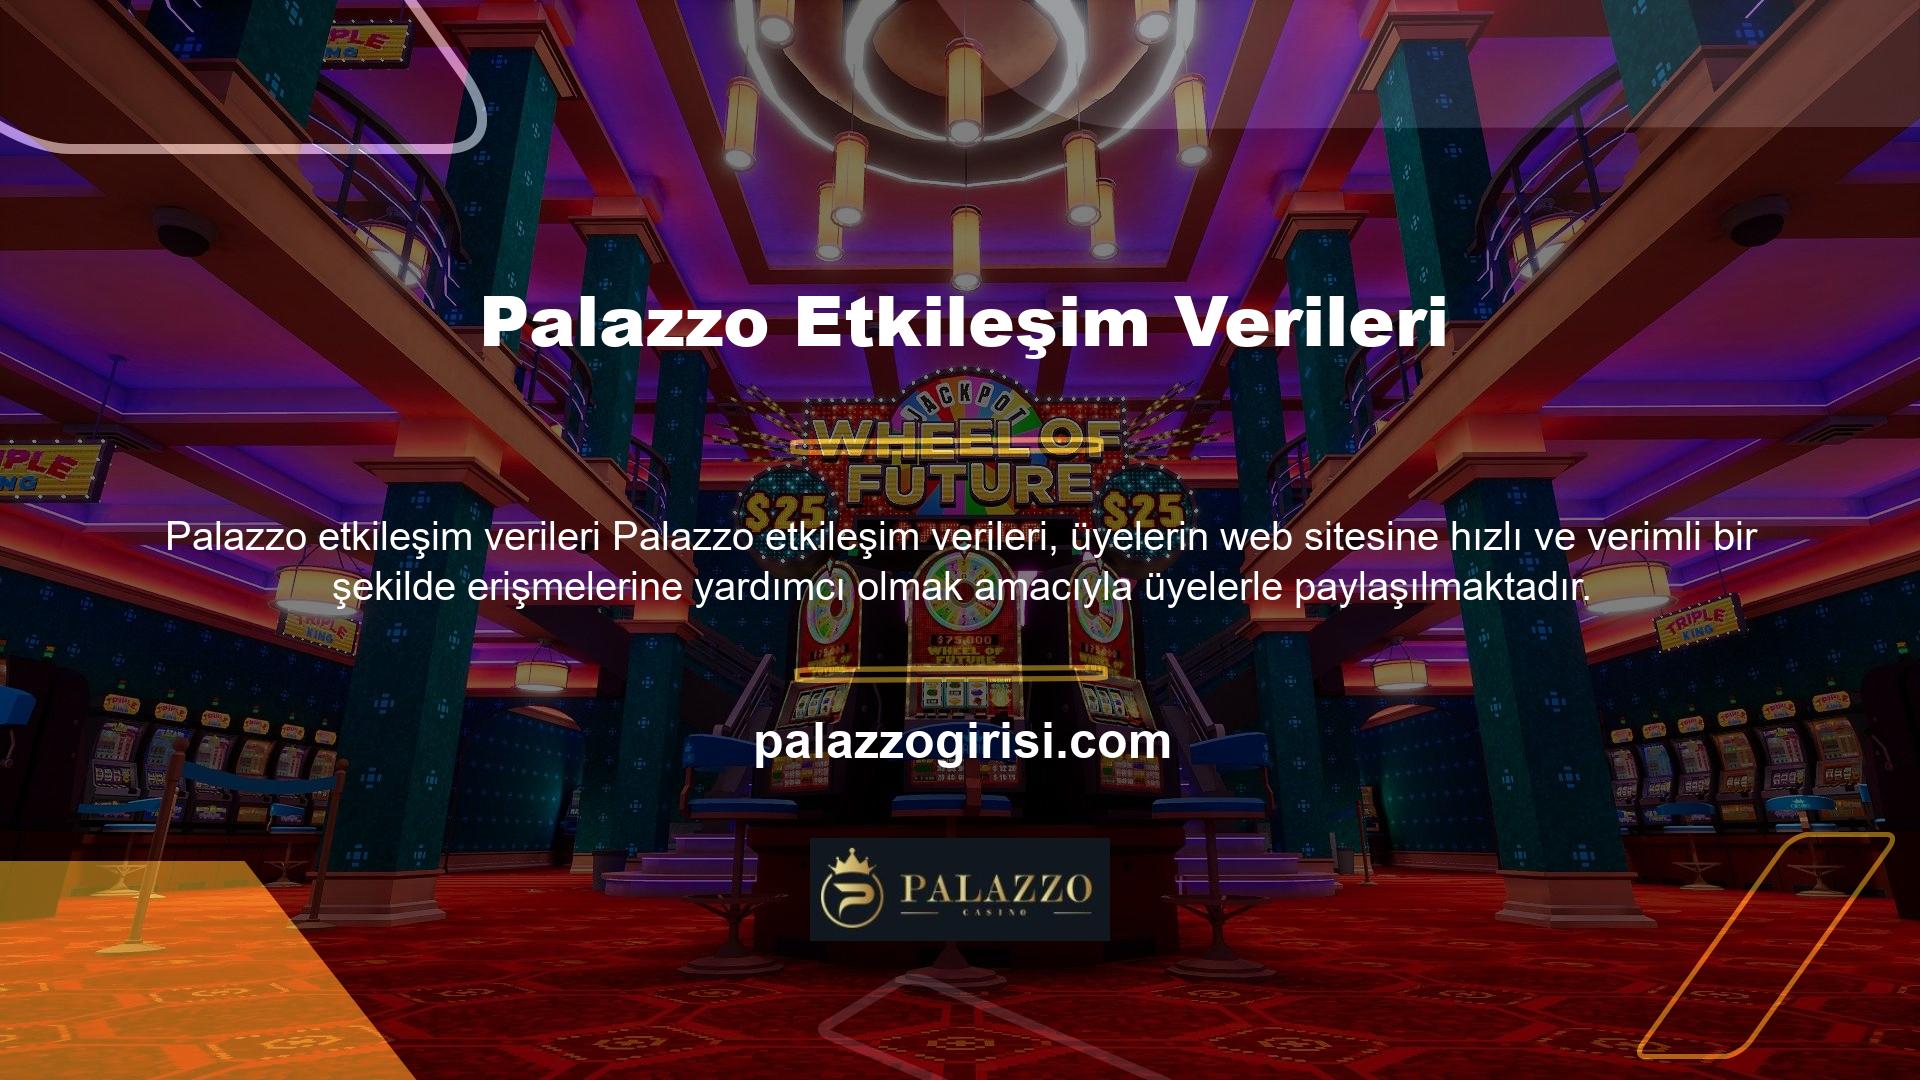 Canlı bahis siteleri, Palazzo etkileşim bilgileri canlı destek programı aracılığıyla güvenilir bir şekilde çevrimiçi müşteri desteği sunabilmektedir